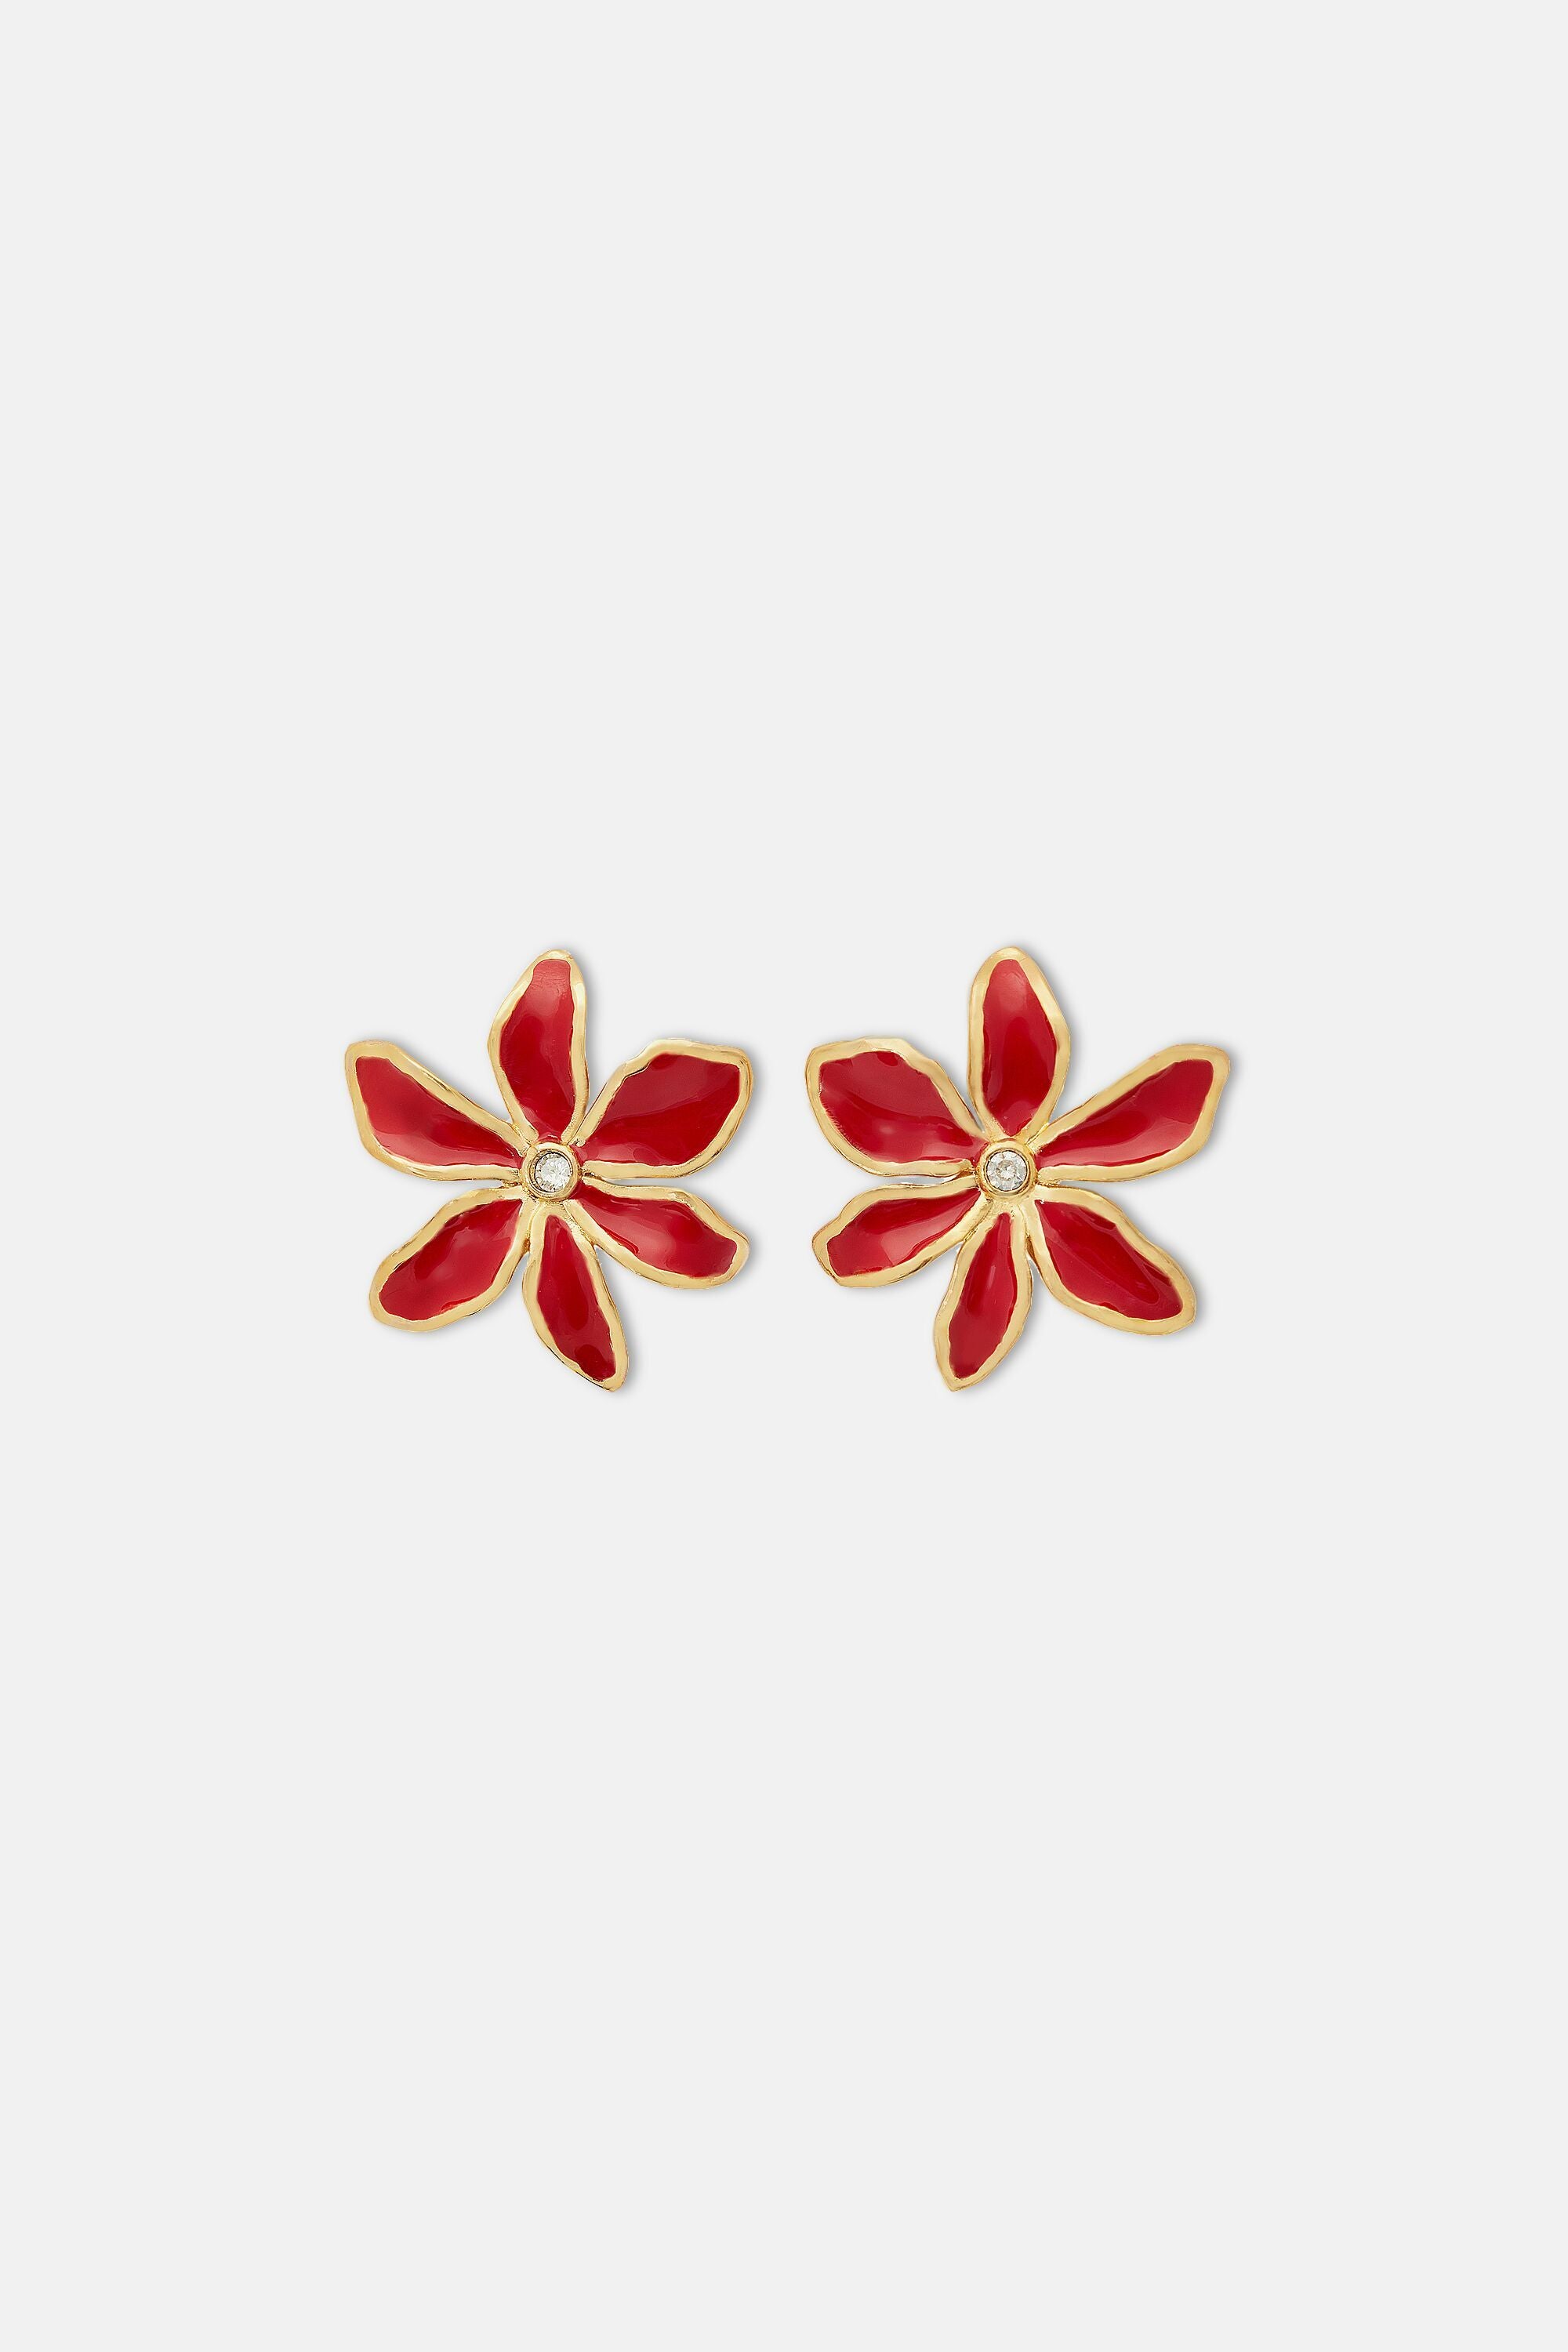 Orange and Red Flower Necklace Set for Haldi Ceremony | Floral Jewelry  Store - Floral Jewelry Store